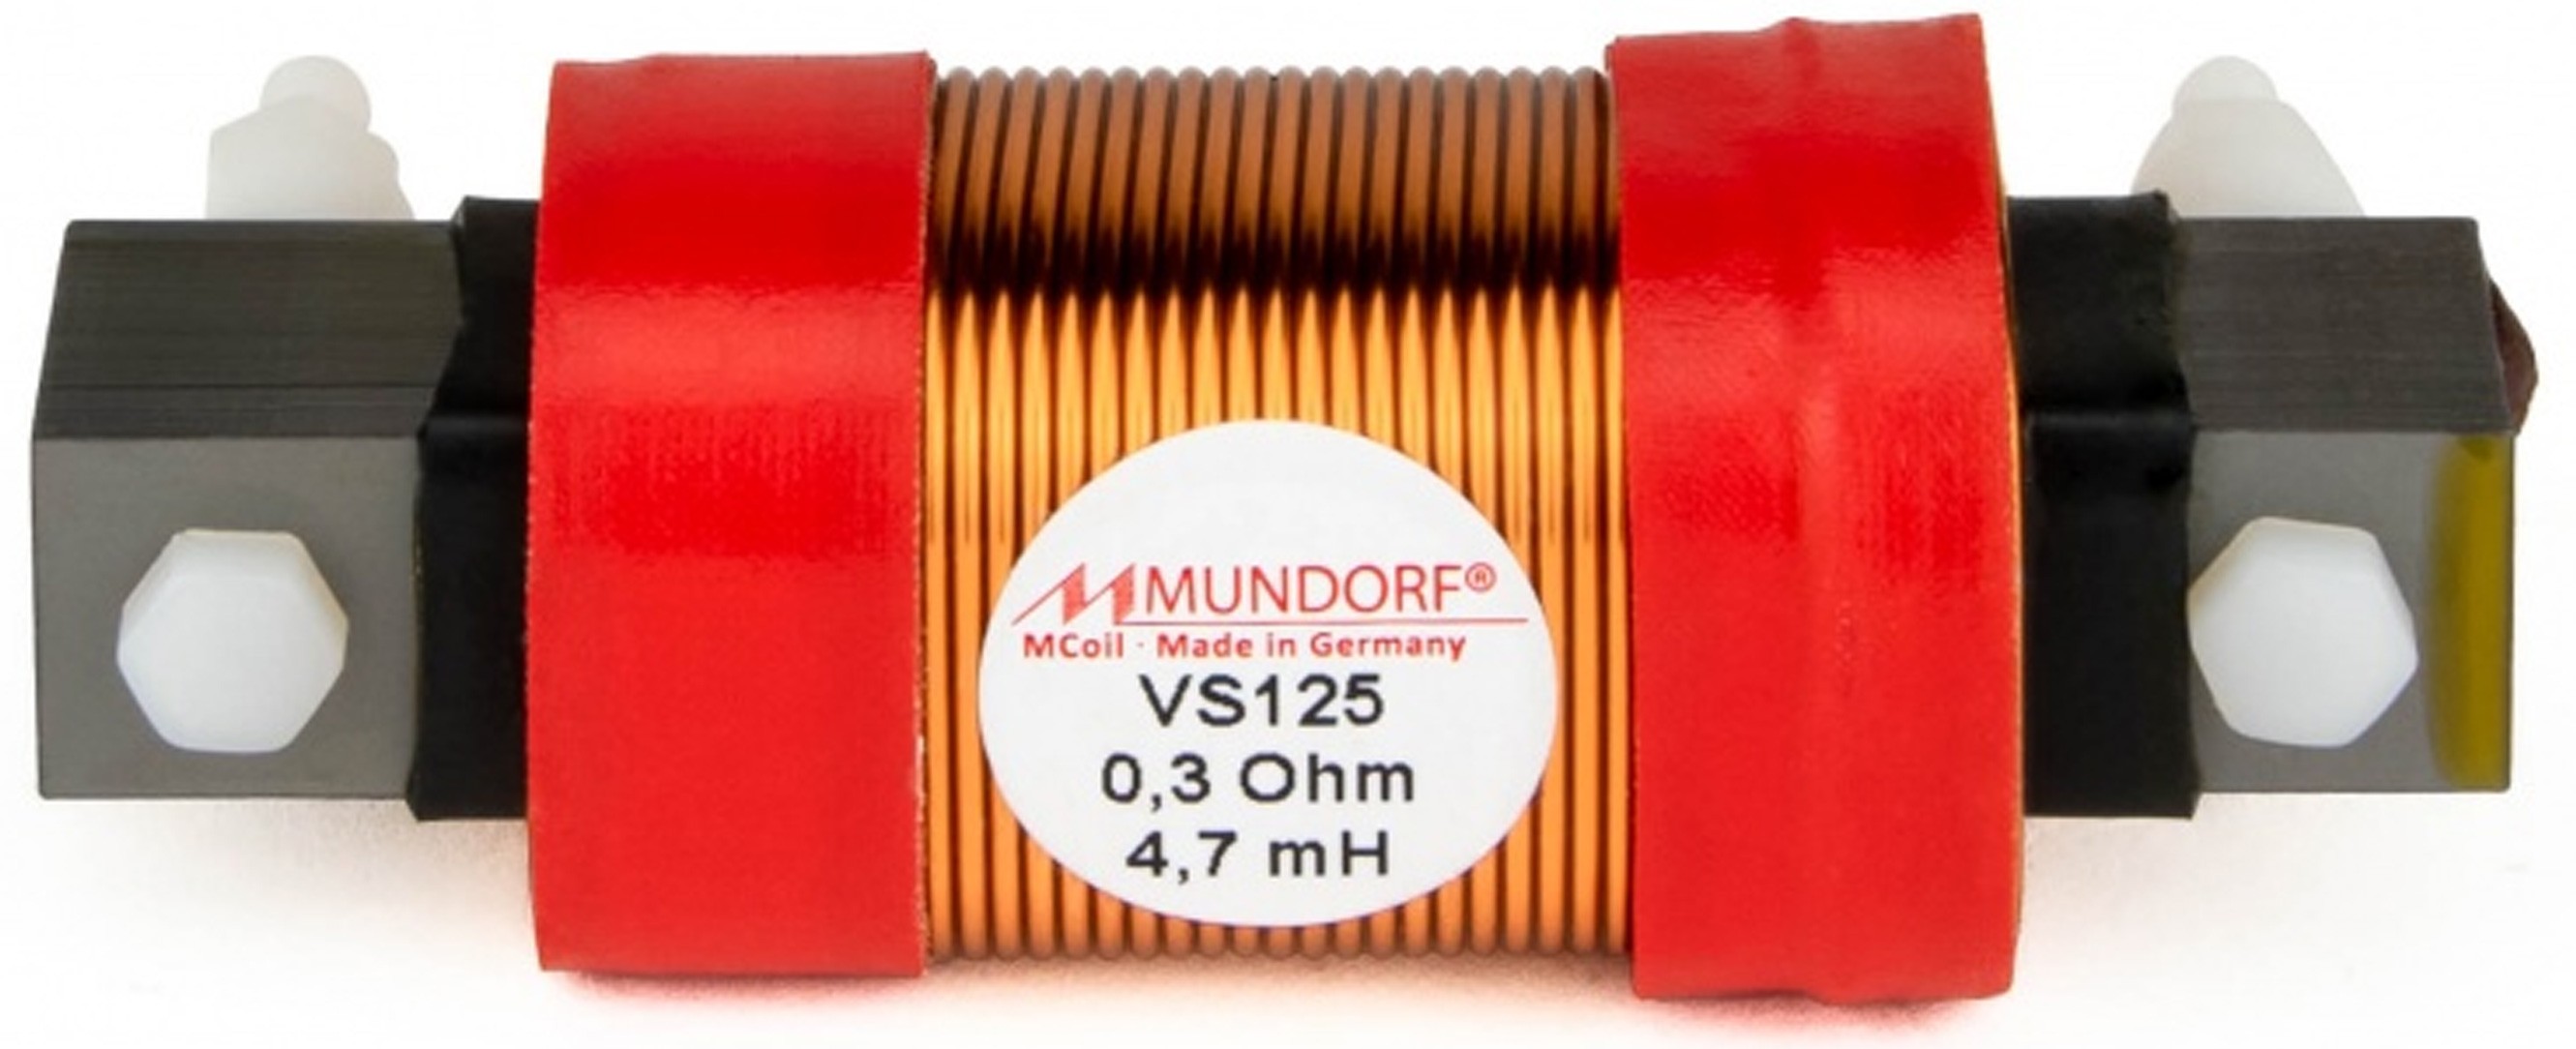 MUNDORF VS125-10 MCOIL ICORE Copper Coil Feron Core 10mH